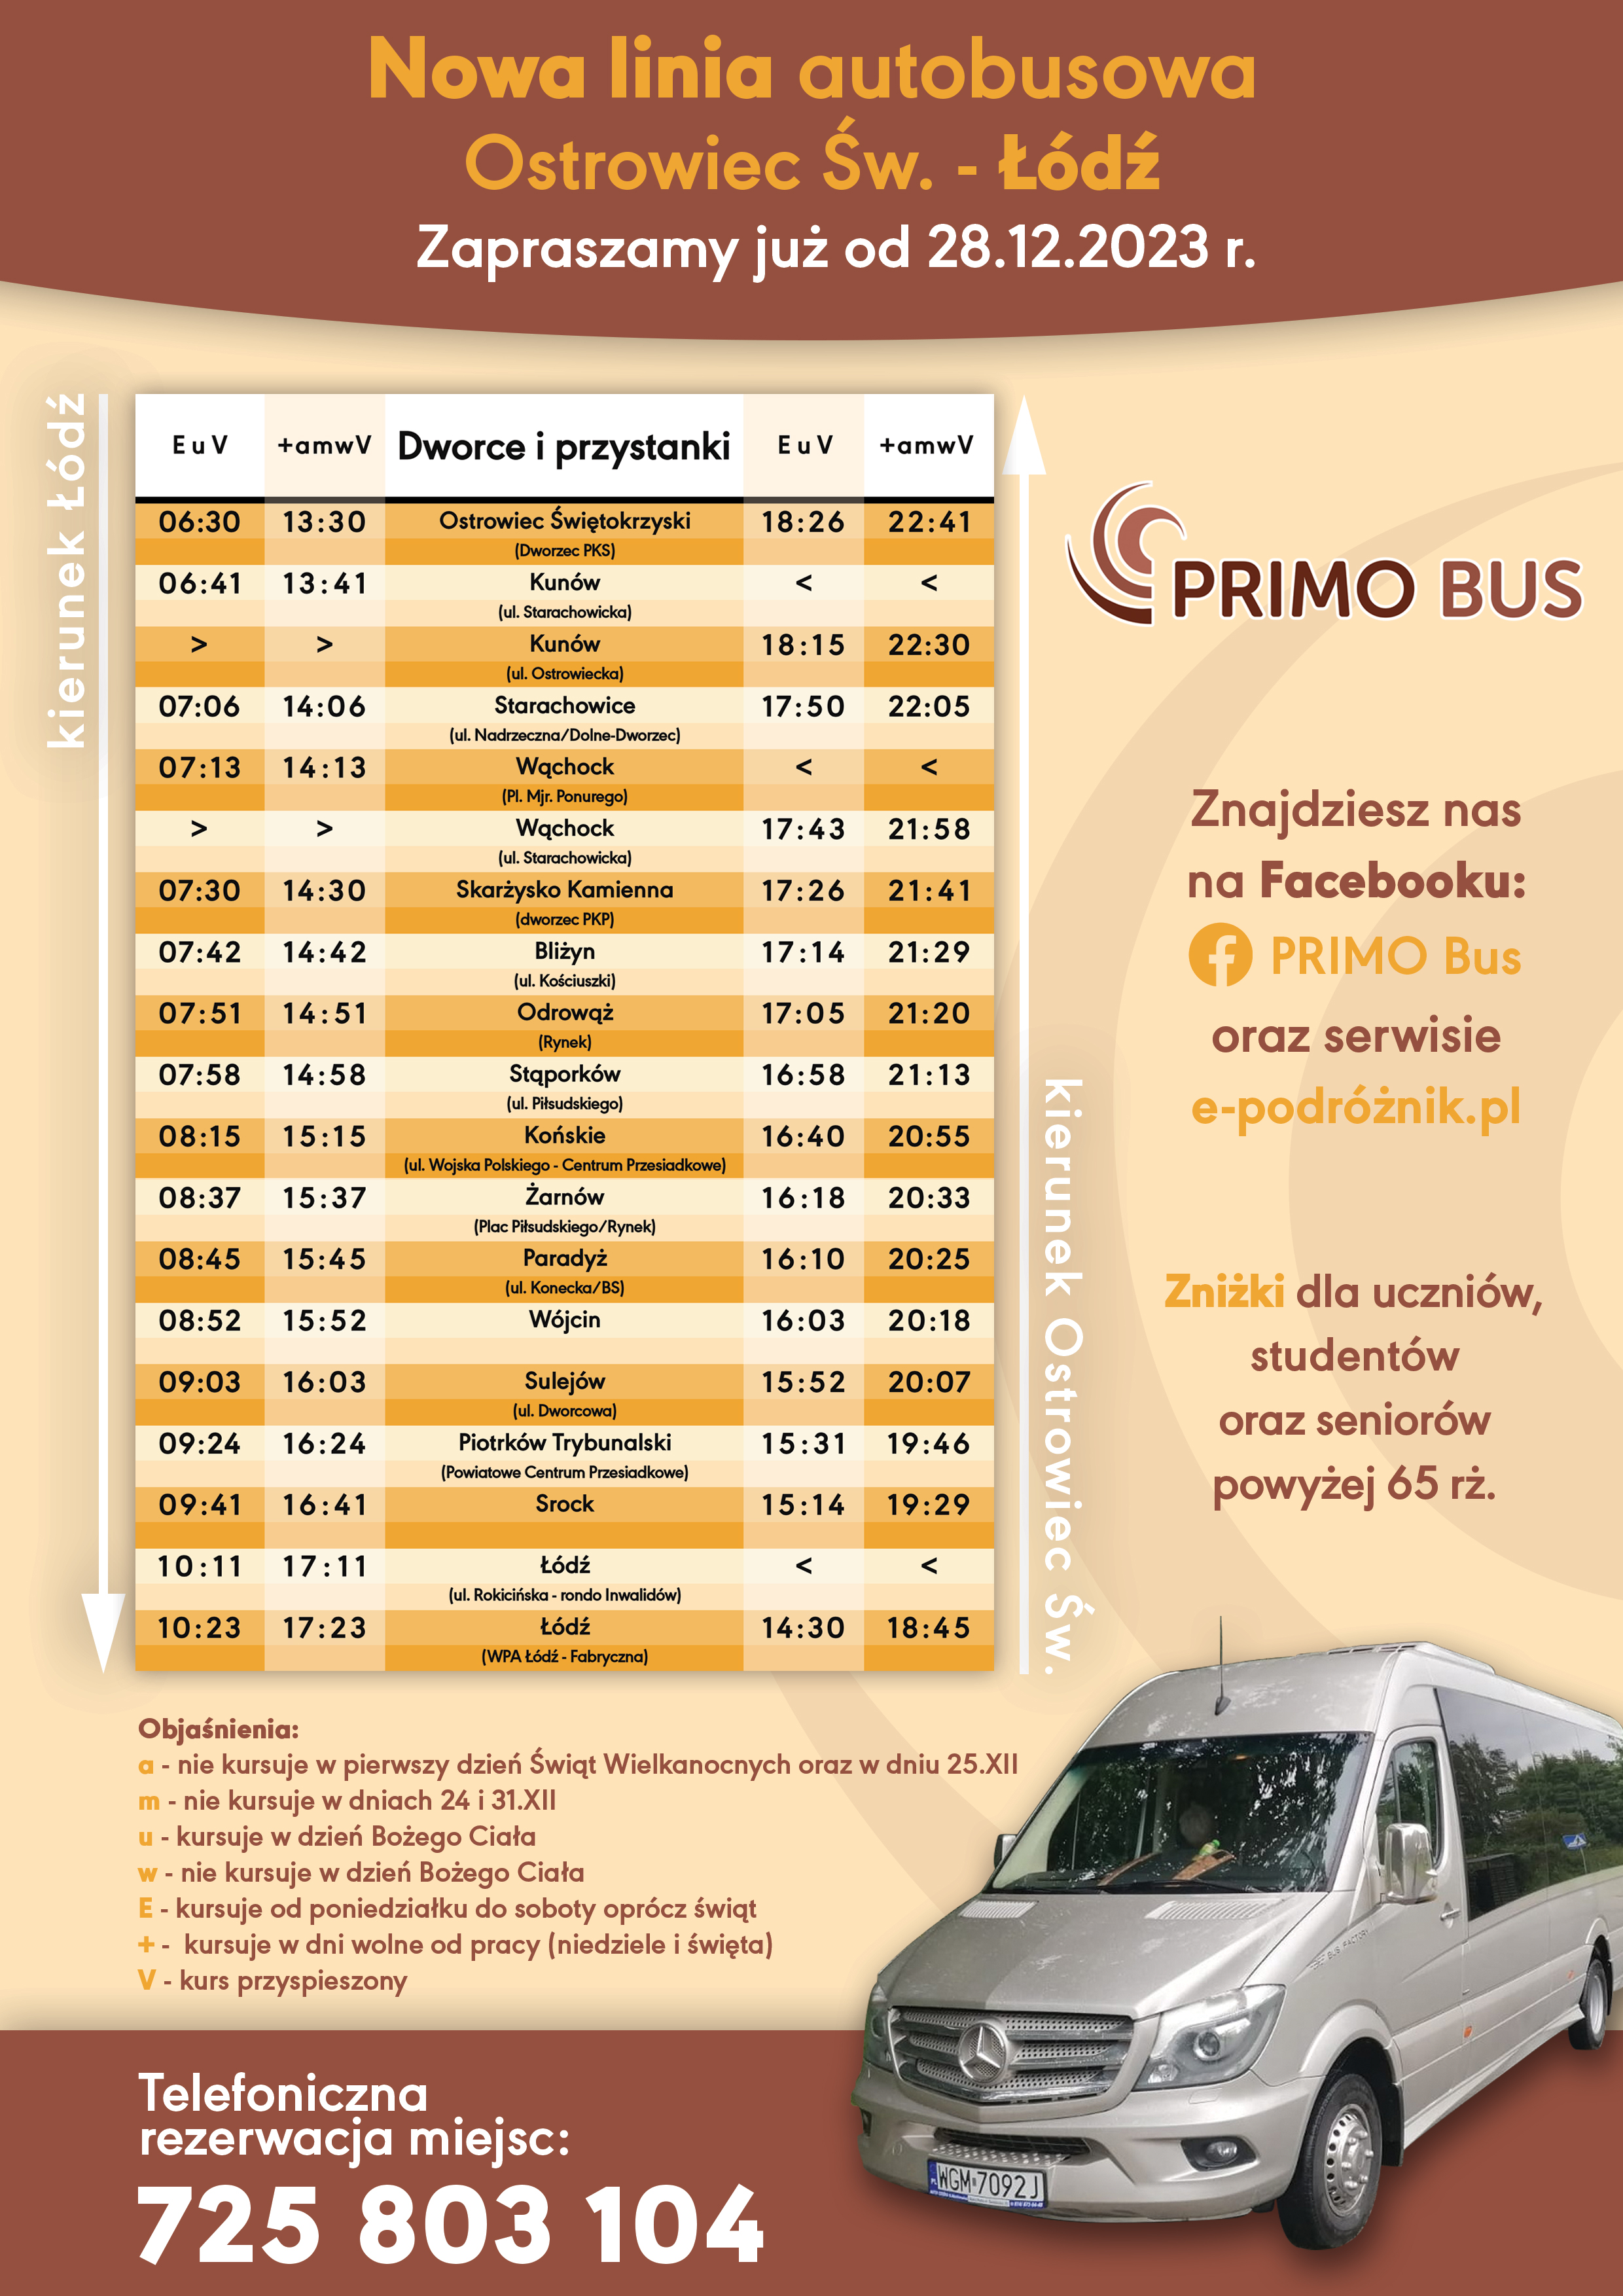 Primo-Bus połączenie do Łodzi